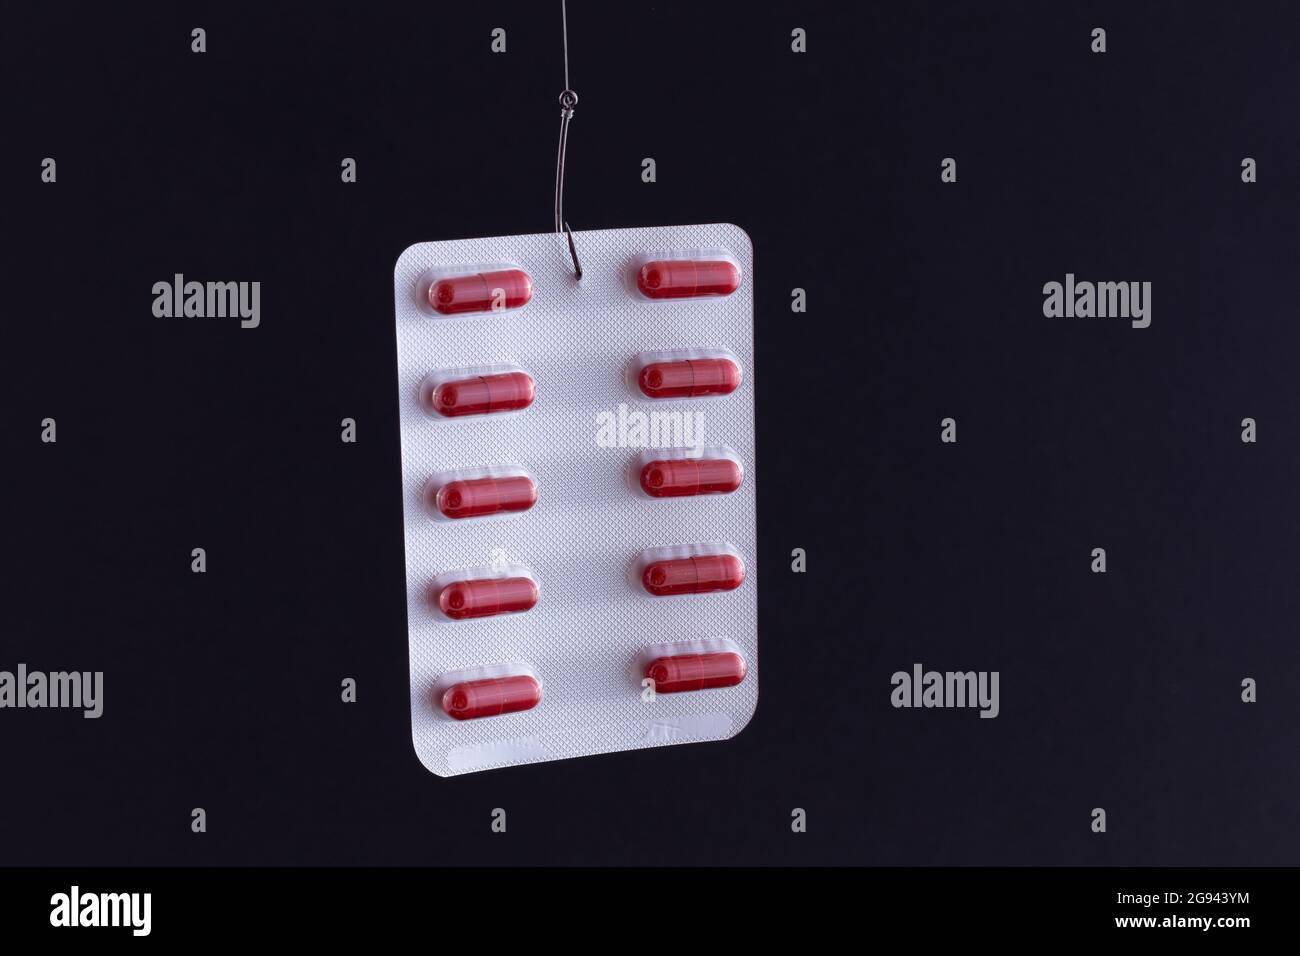 Le piège pharmaceutique et la toxicomanie - pilules rouges ou comprimés dans un emballage suspendu sur un crochet de pêche contre le fond noir Banque D'Images